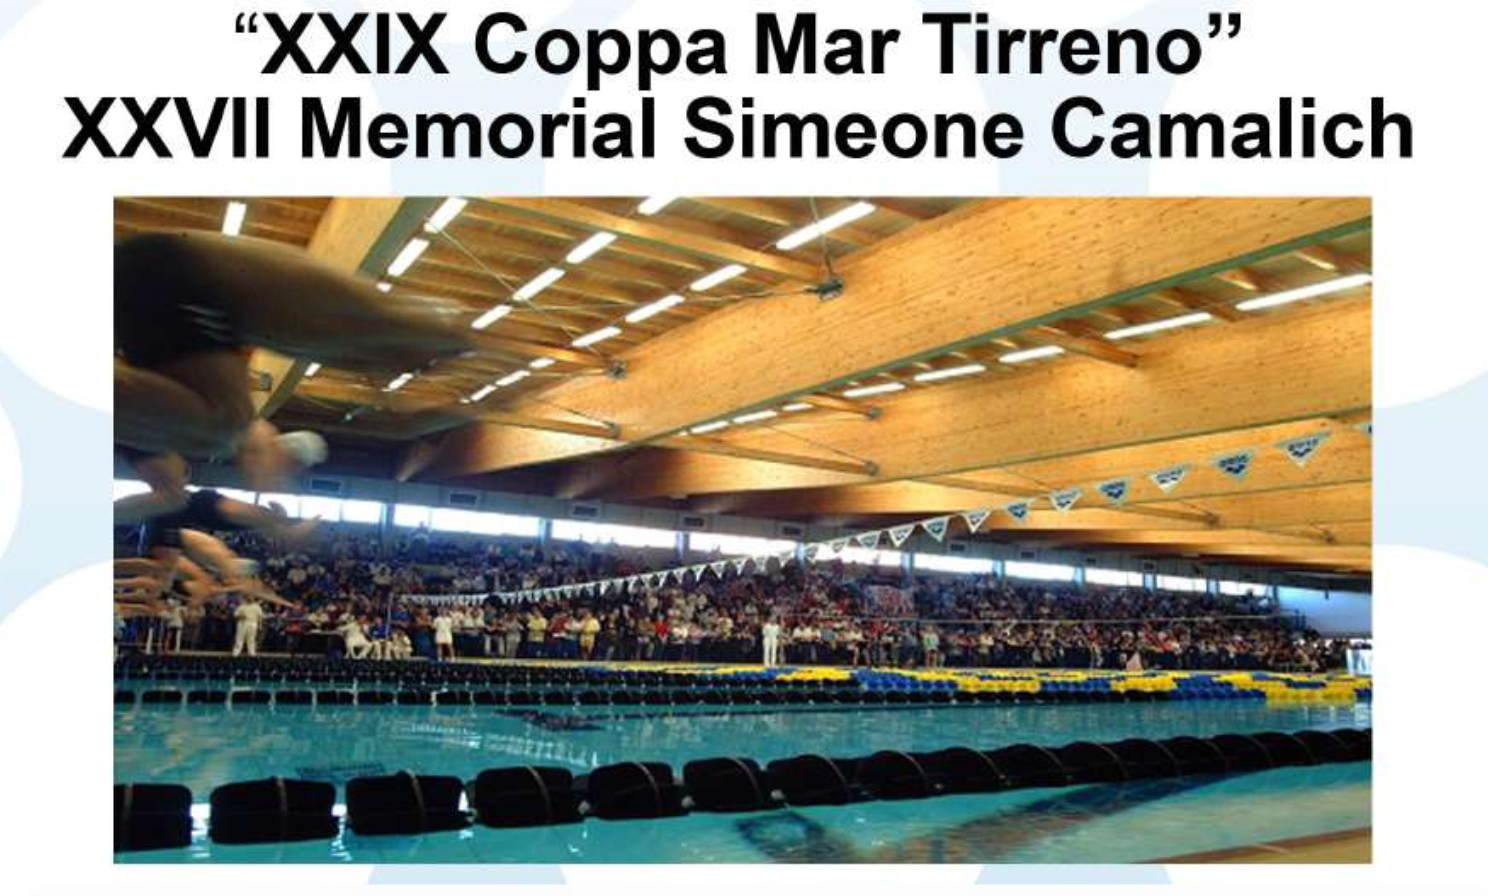 XXIX Coppa Mar Tirreno